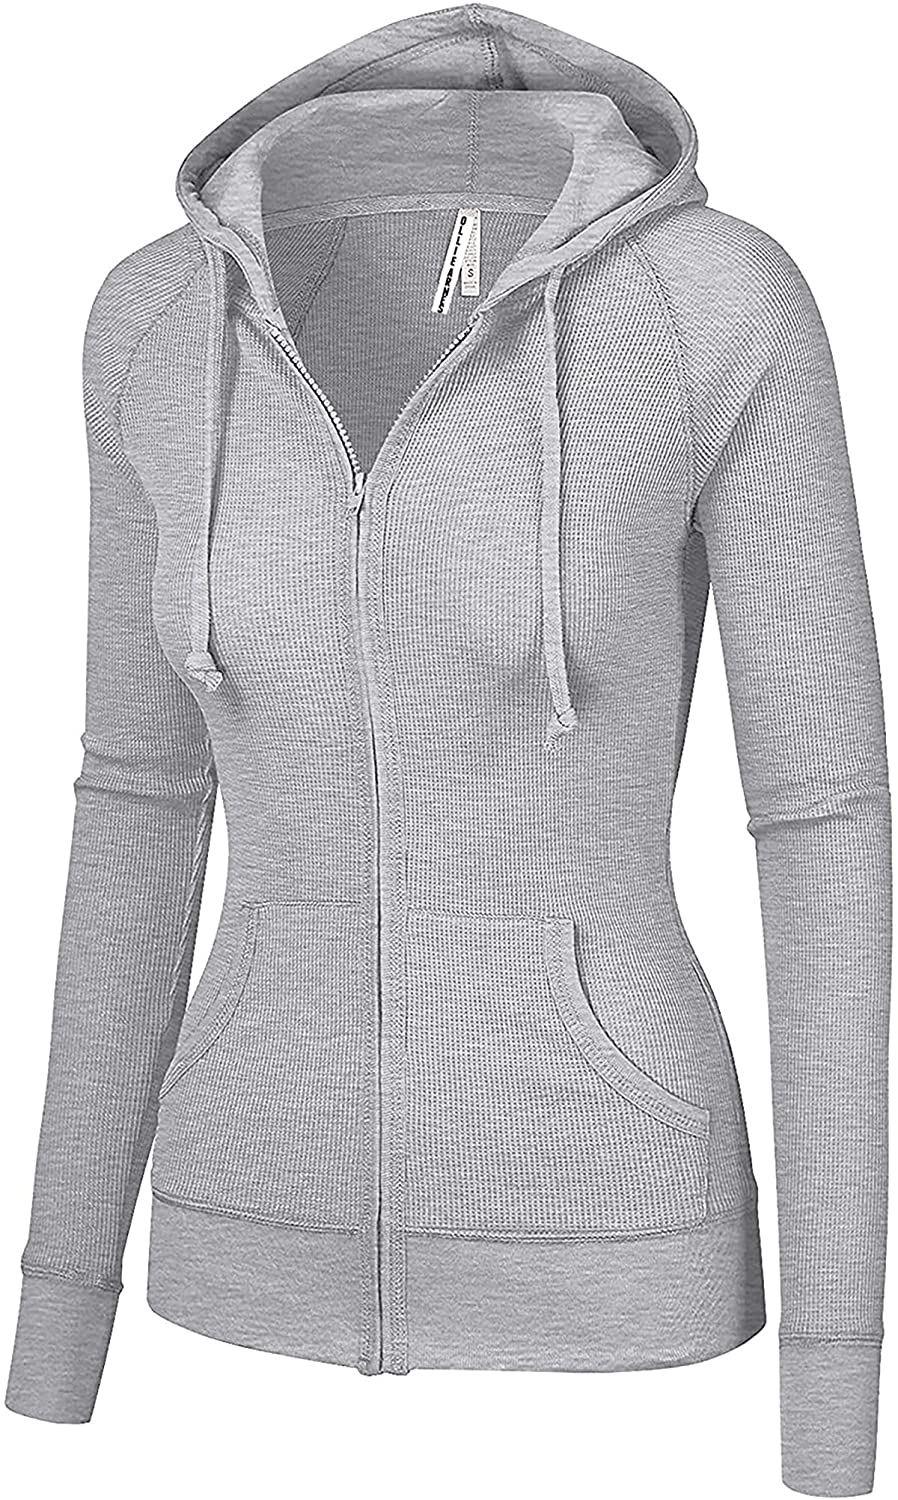 thumbnail 26  - OLLIE ARNES Women&#039;s Thermal Long Hoodie Zip Up Jacket Sweater Tops